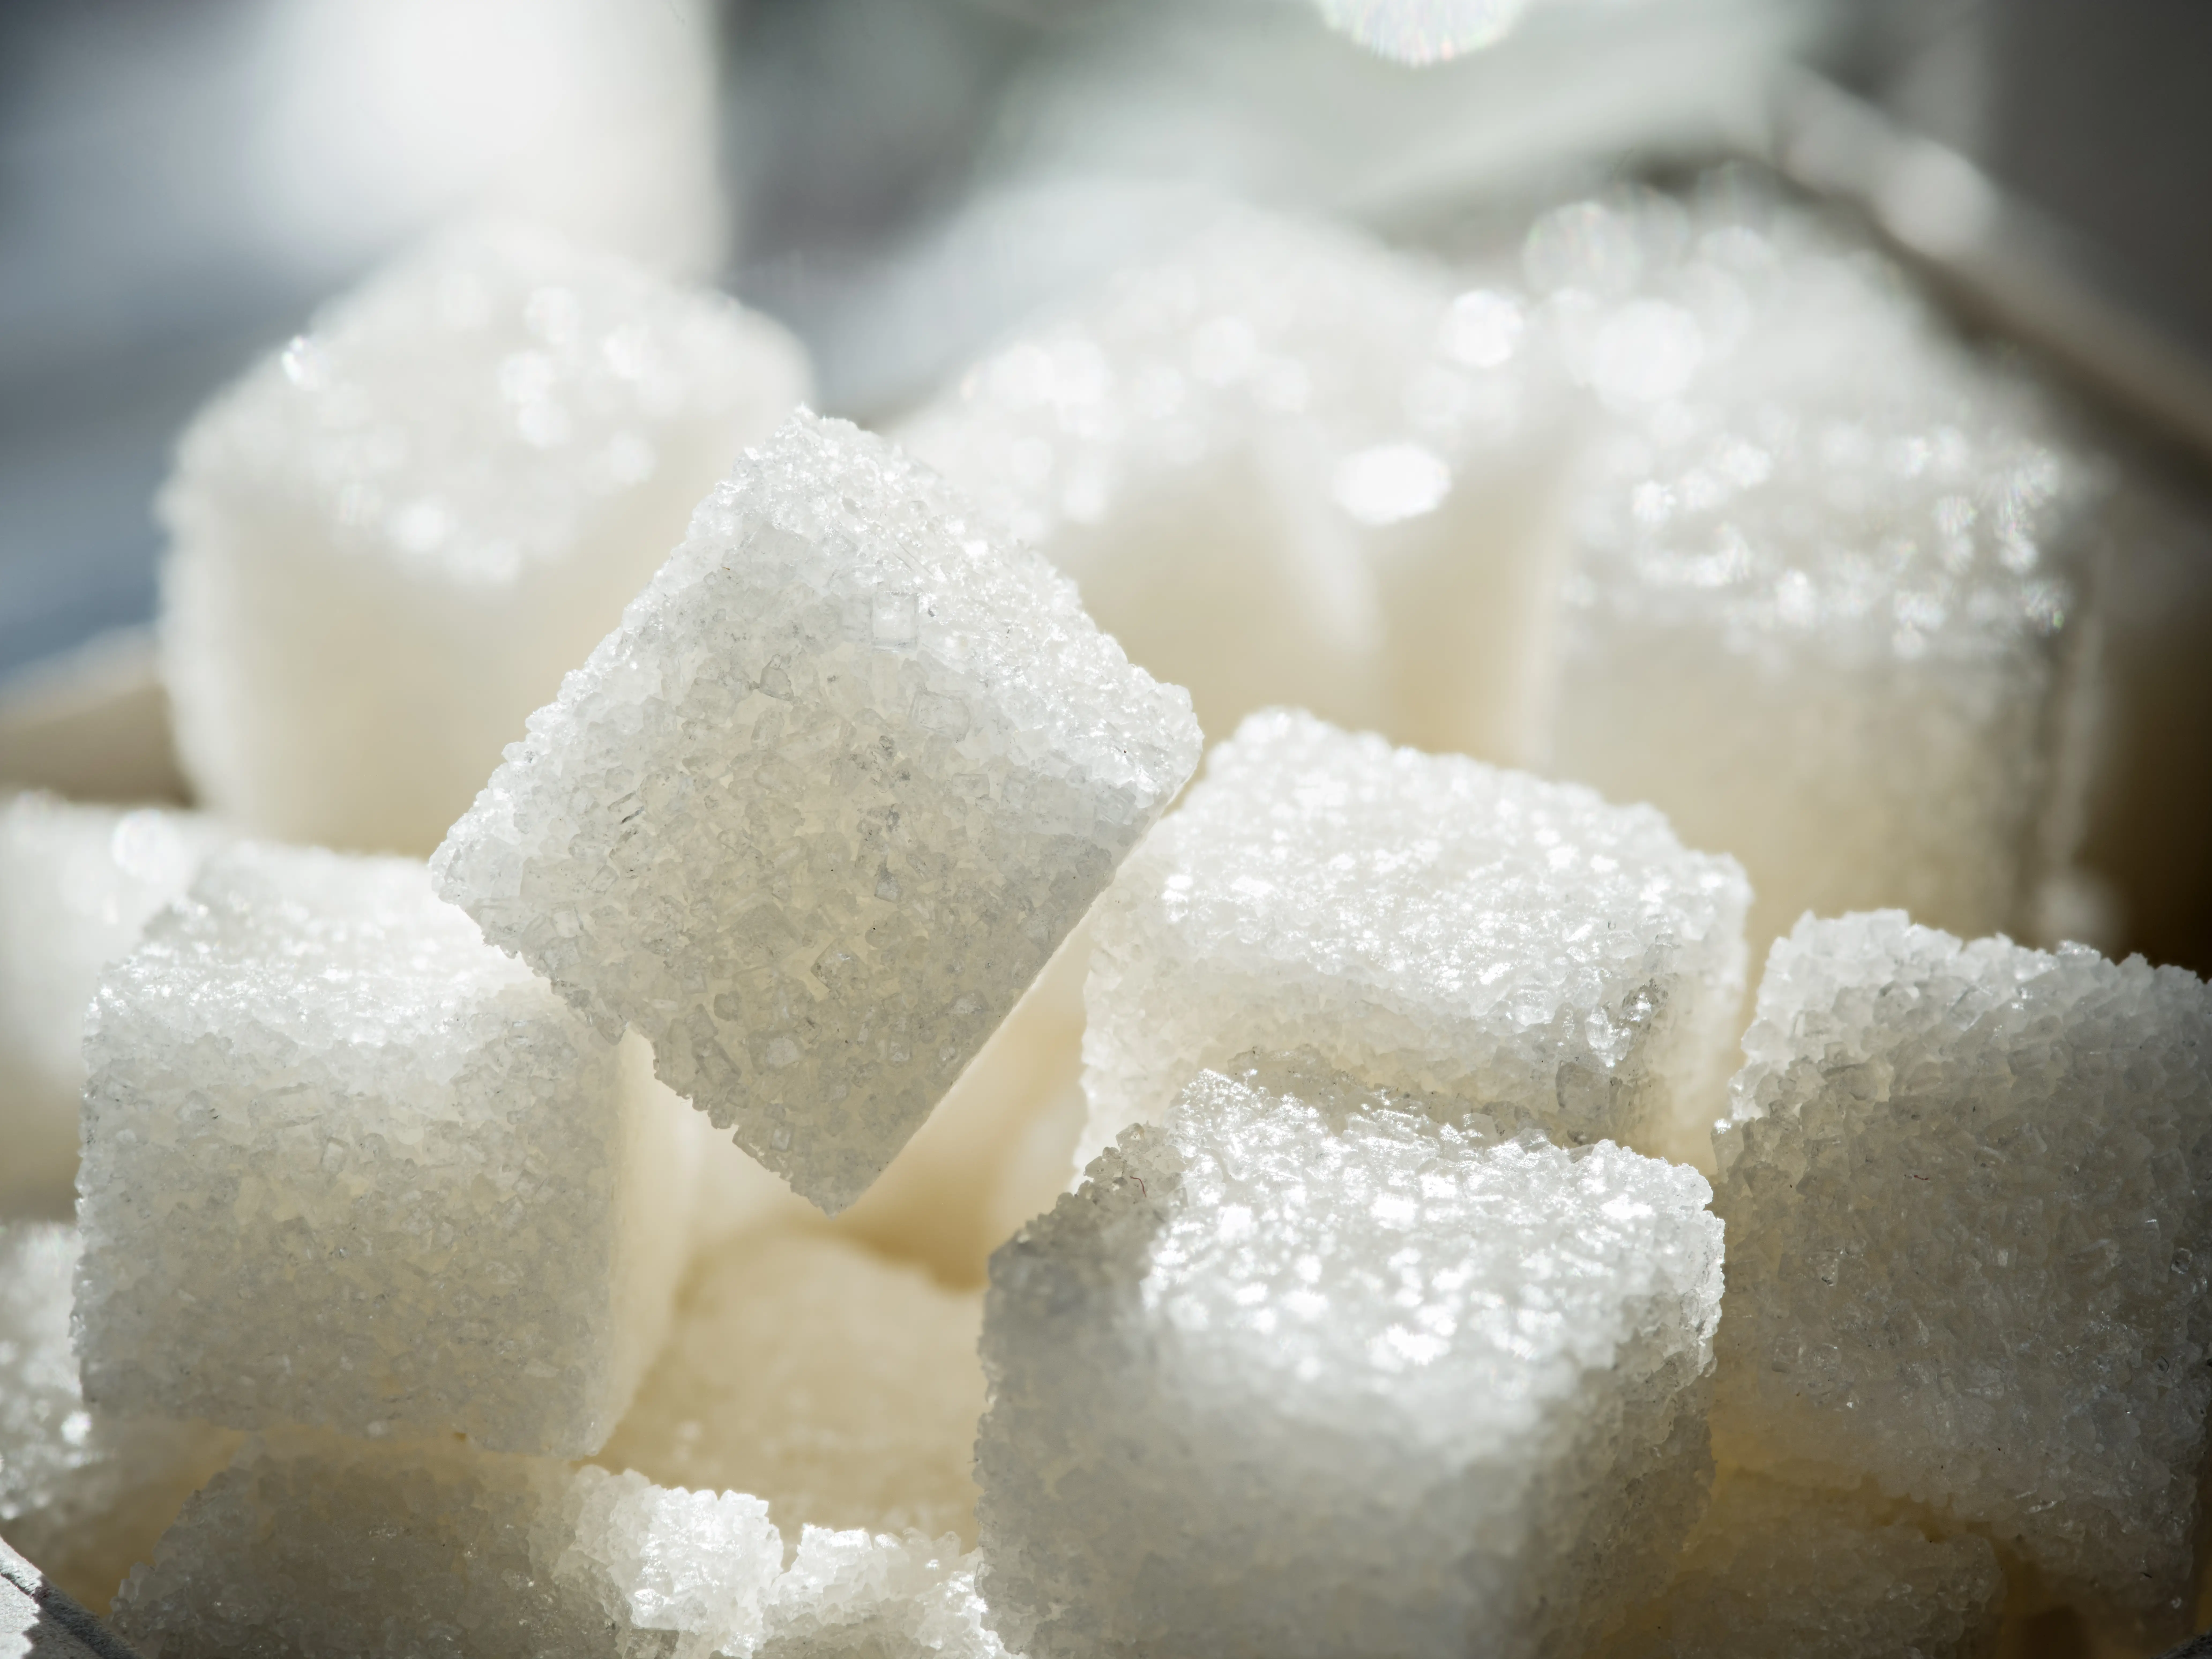 설탕이 우리 몸에 염증성 식품이라는 것을 계몽하는 사진